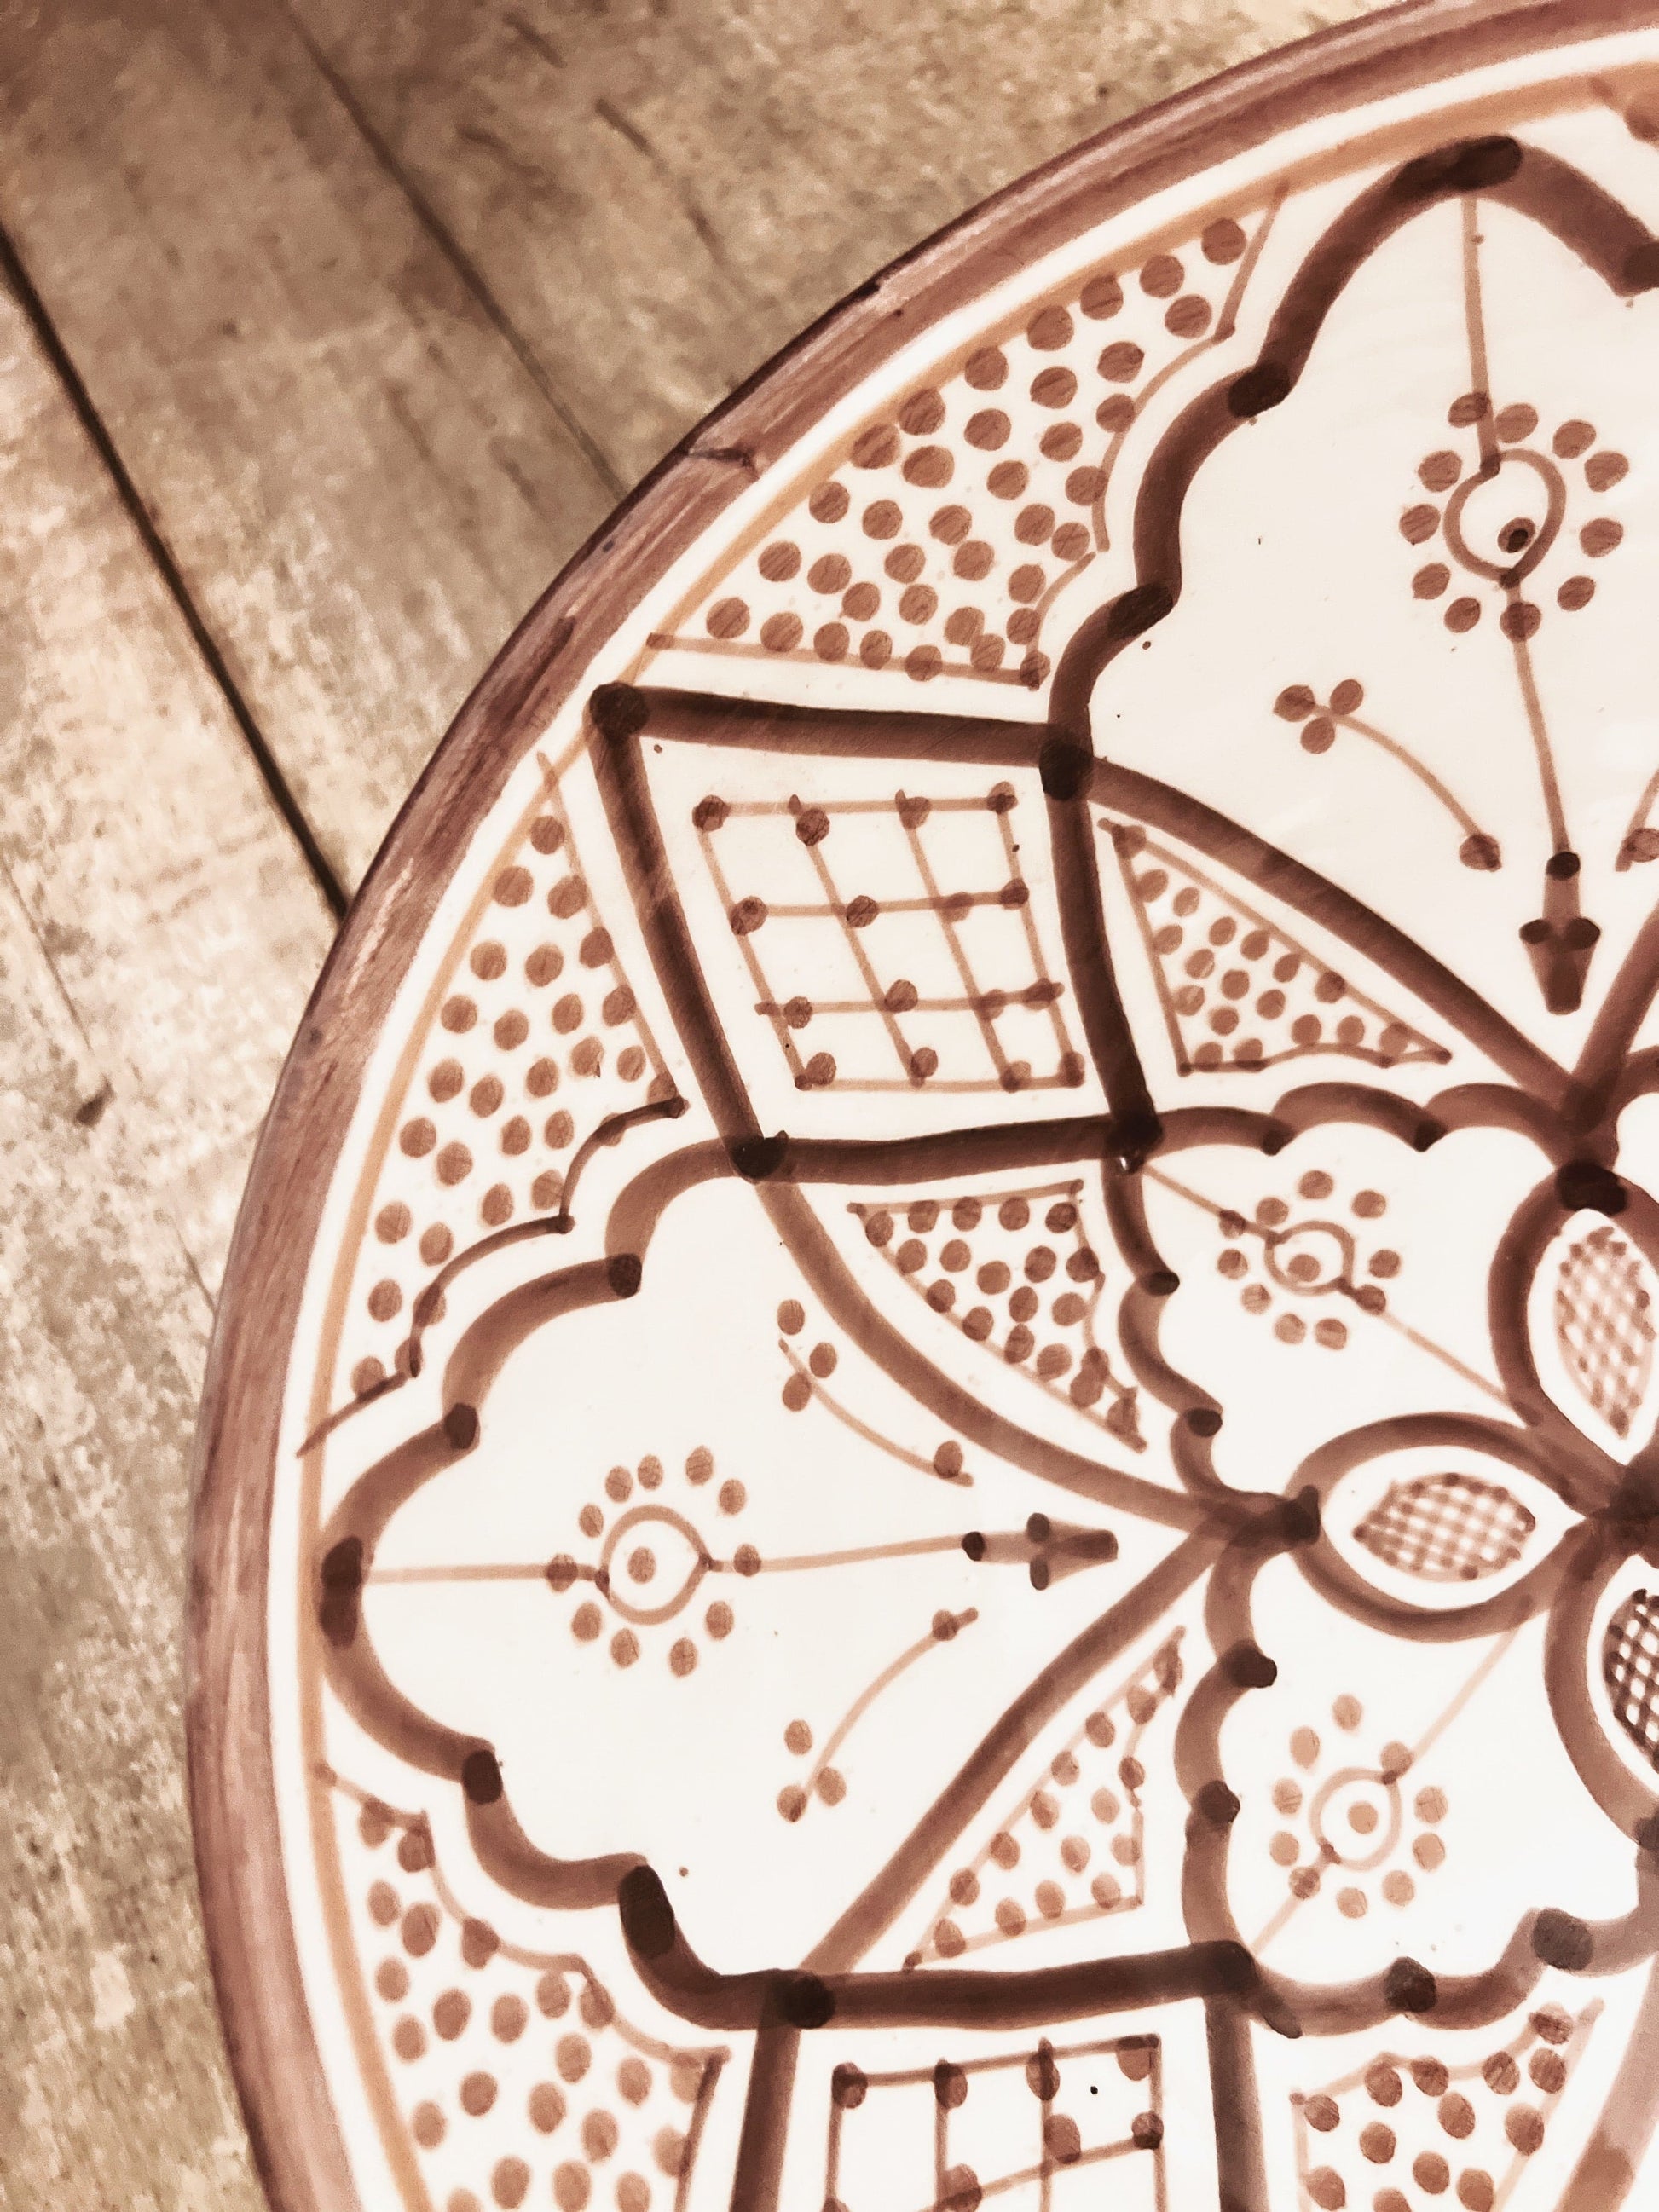 Vakre detaljer på den håndlagde og håndmalte keramikken fra Marokko! Et lekkert servise både hjemme og på hytta.